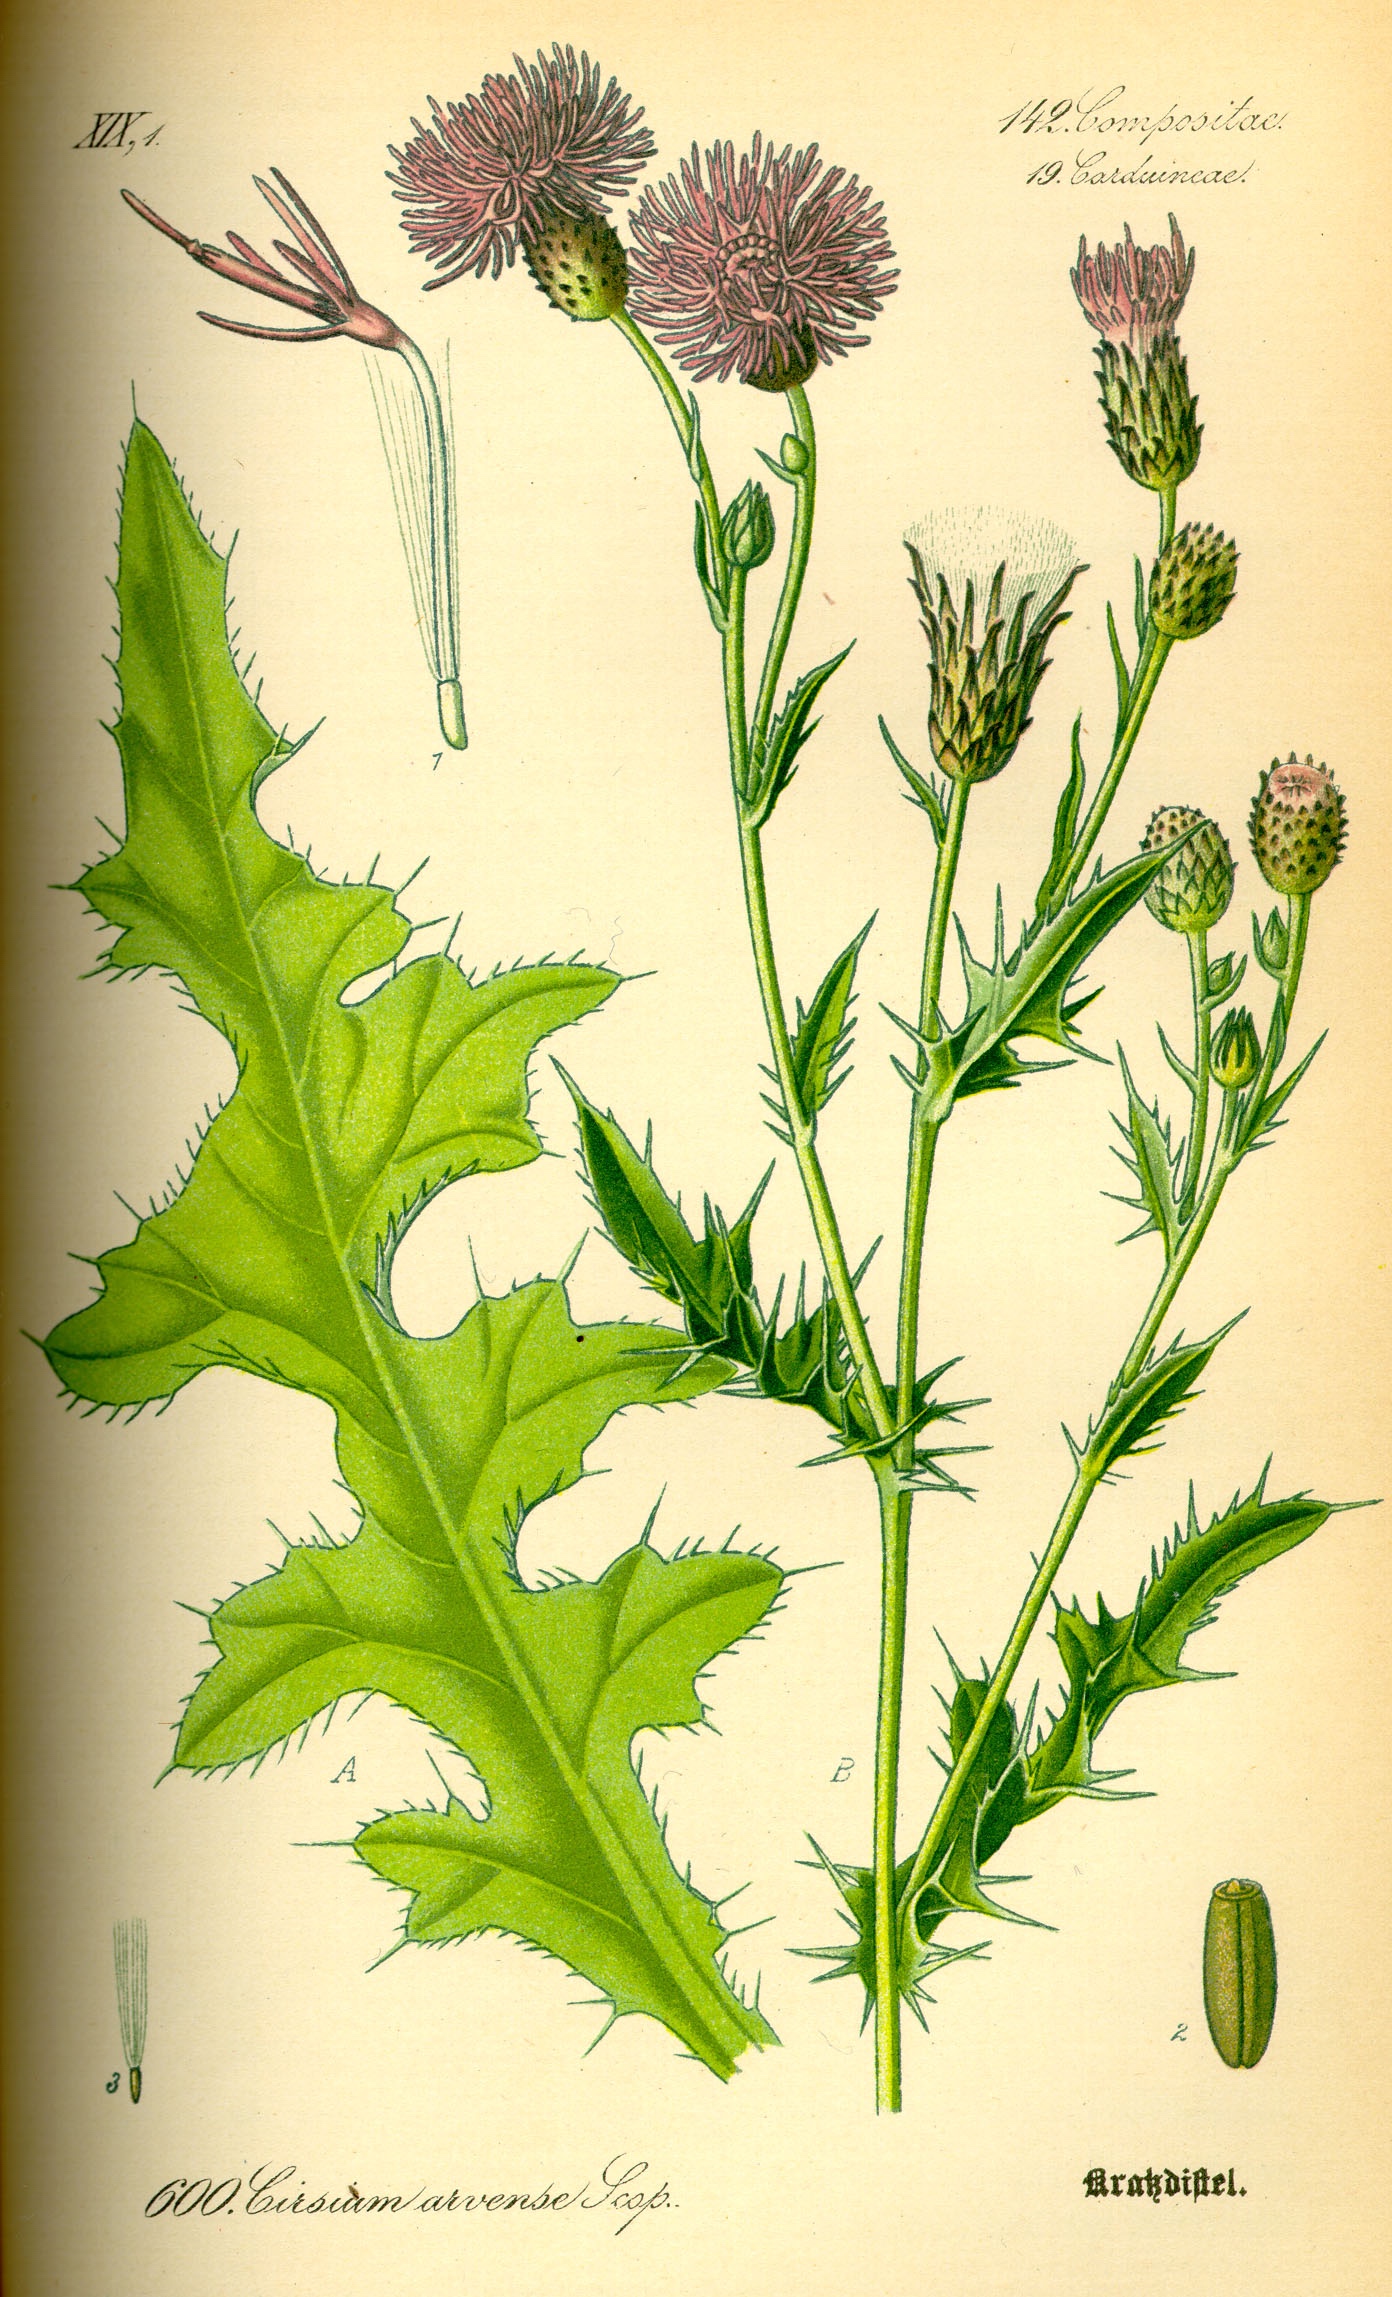 1885 Canada Thistle botanical illustration.